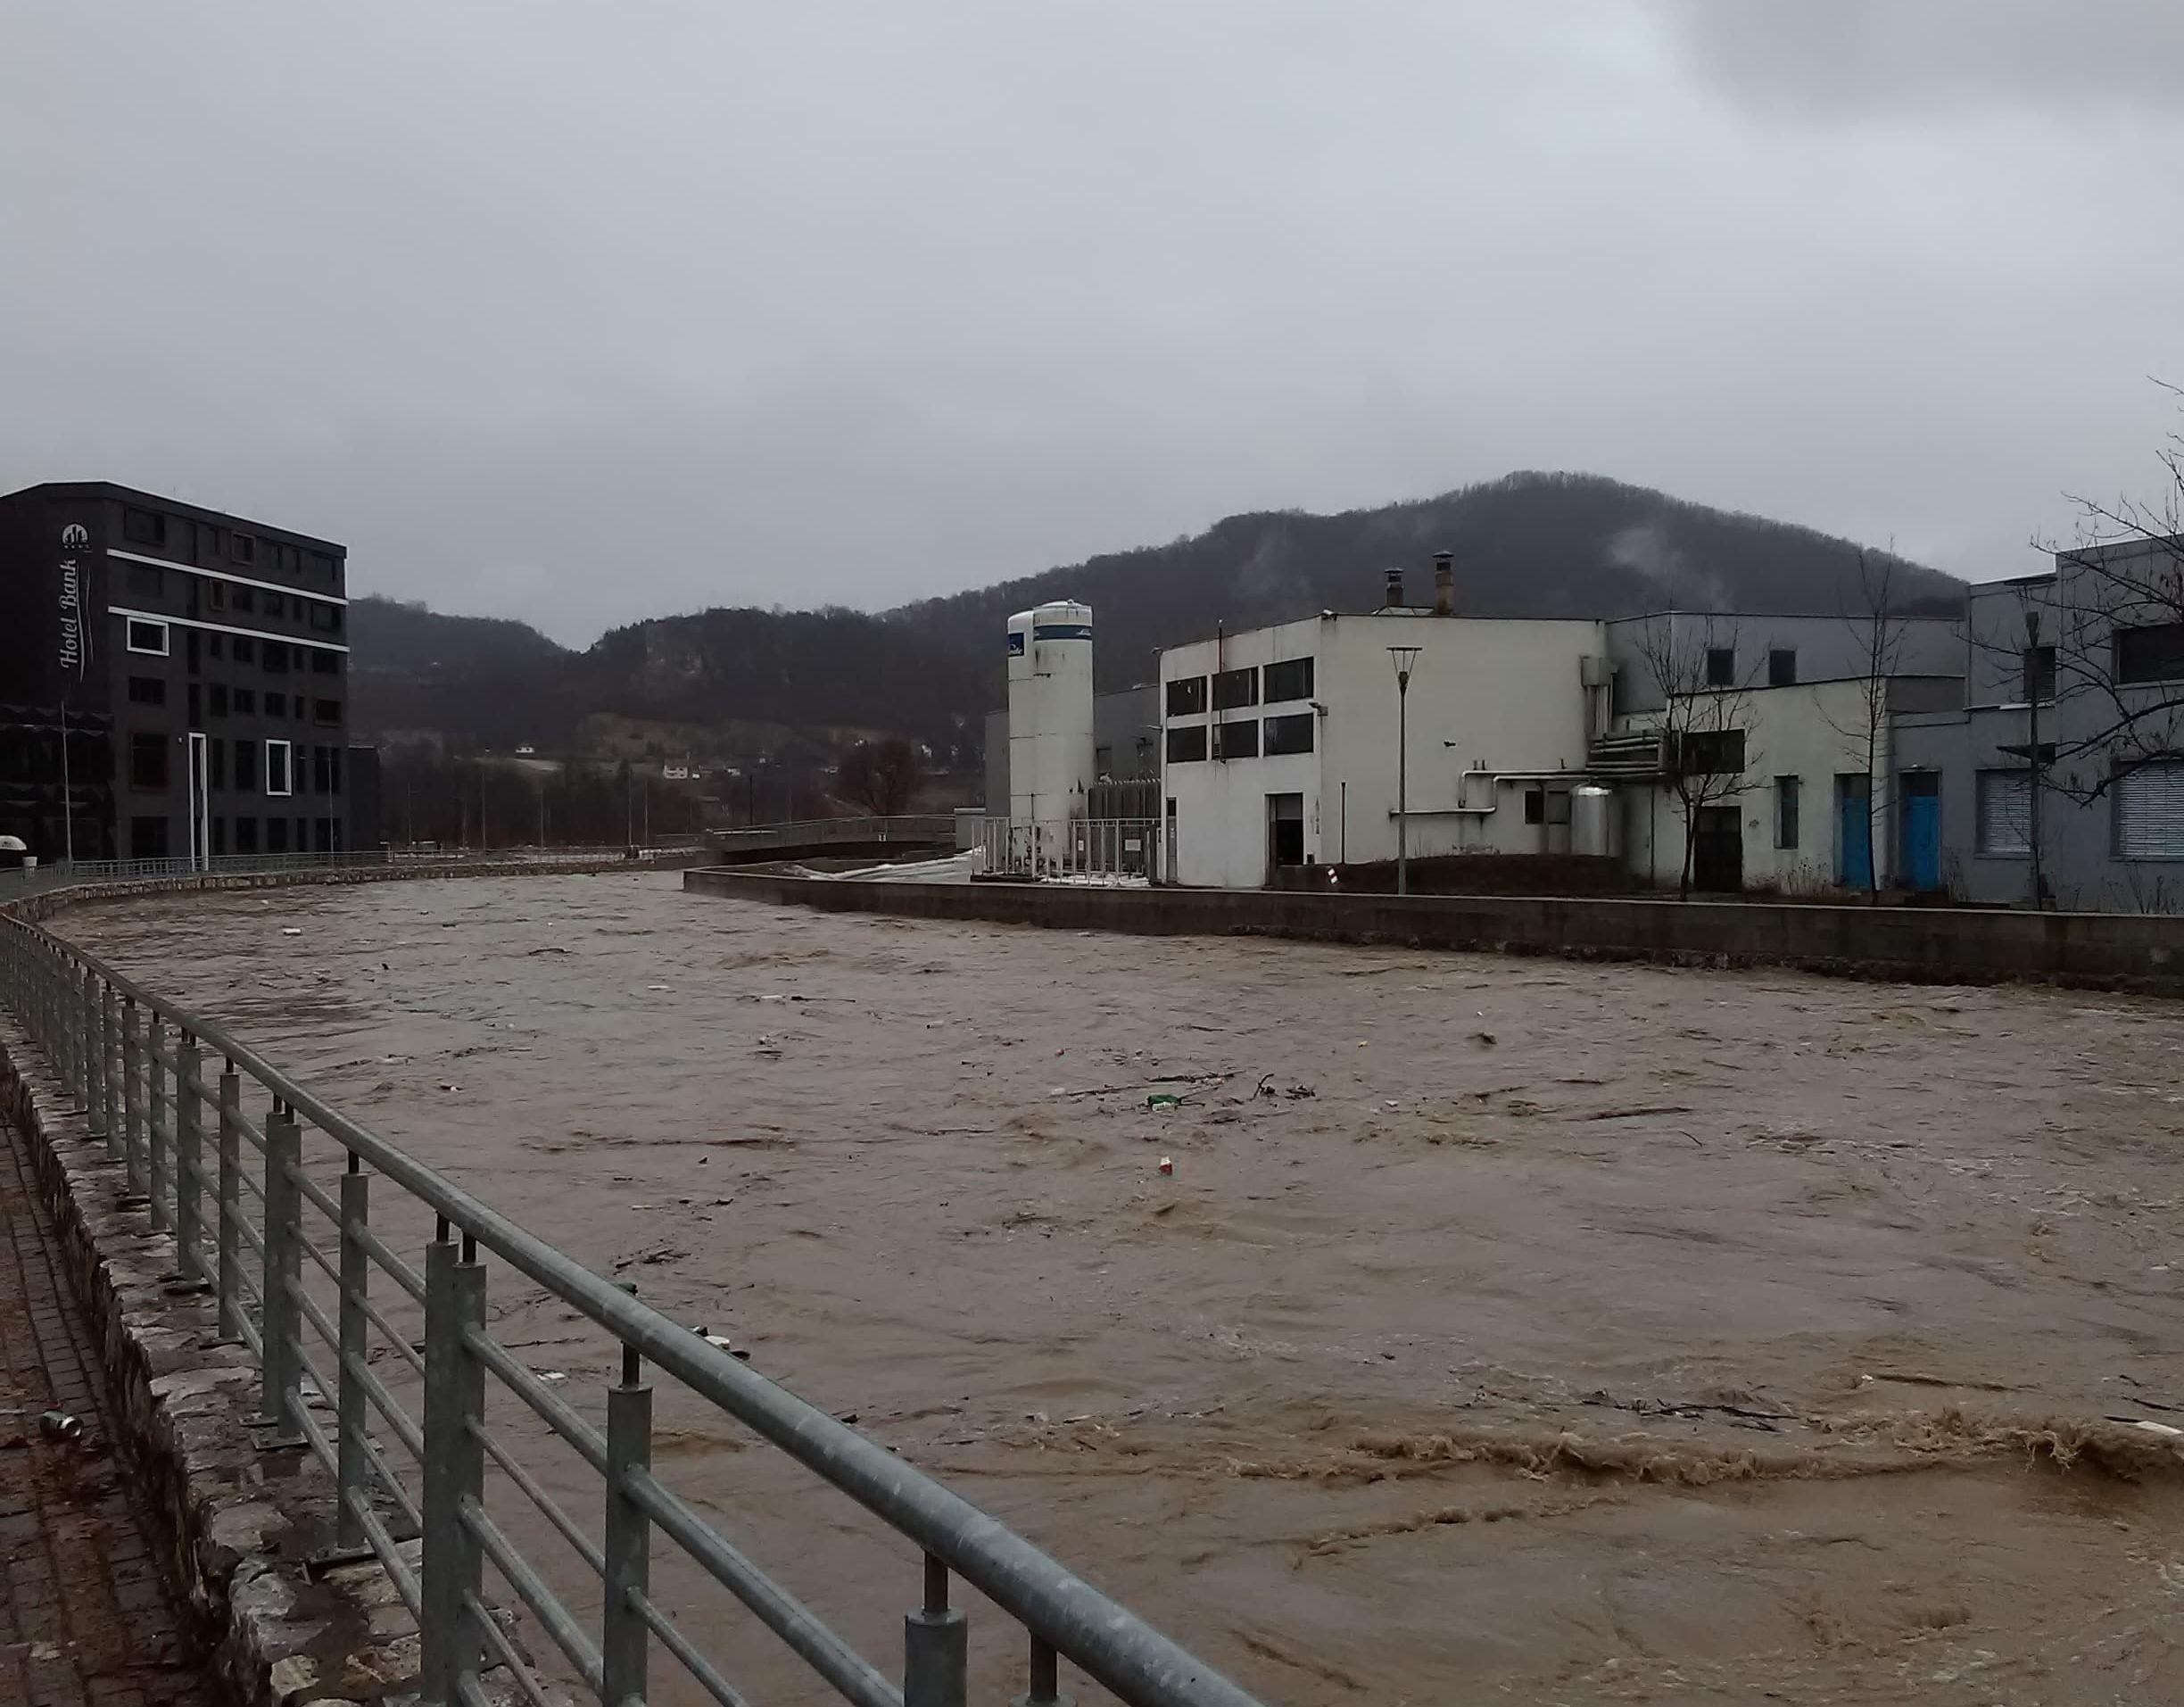 Porast nivoa rijeka u Kiseljaku - Avaz